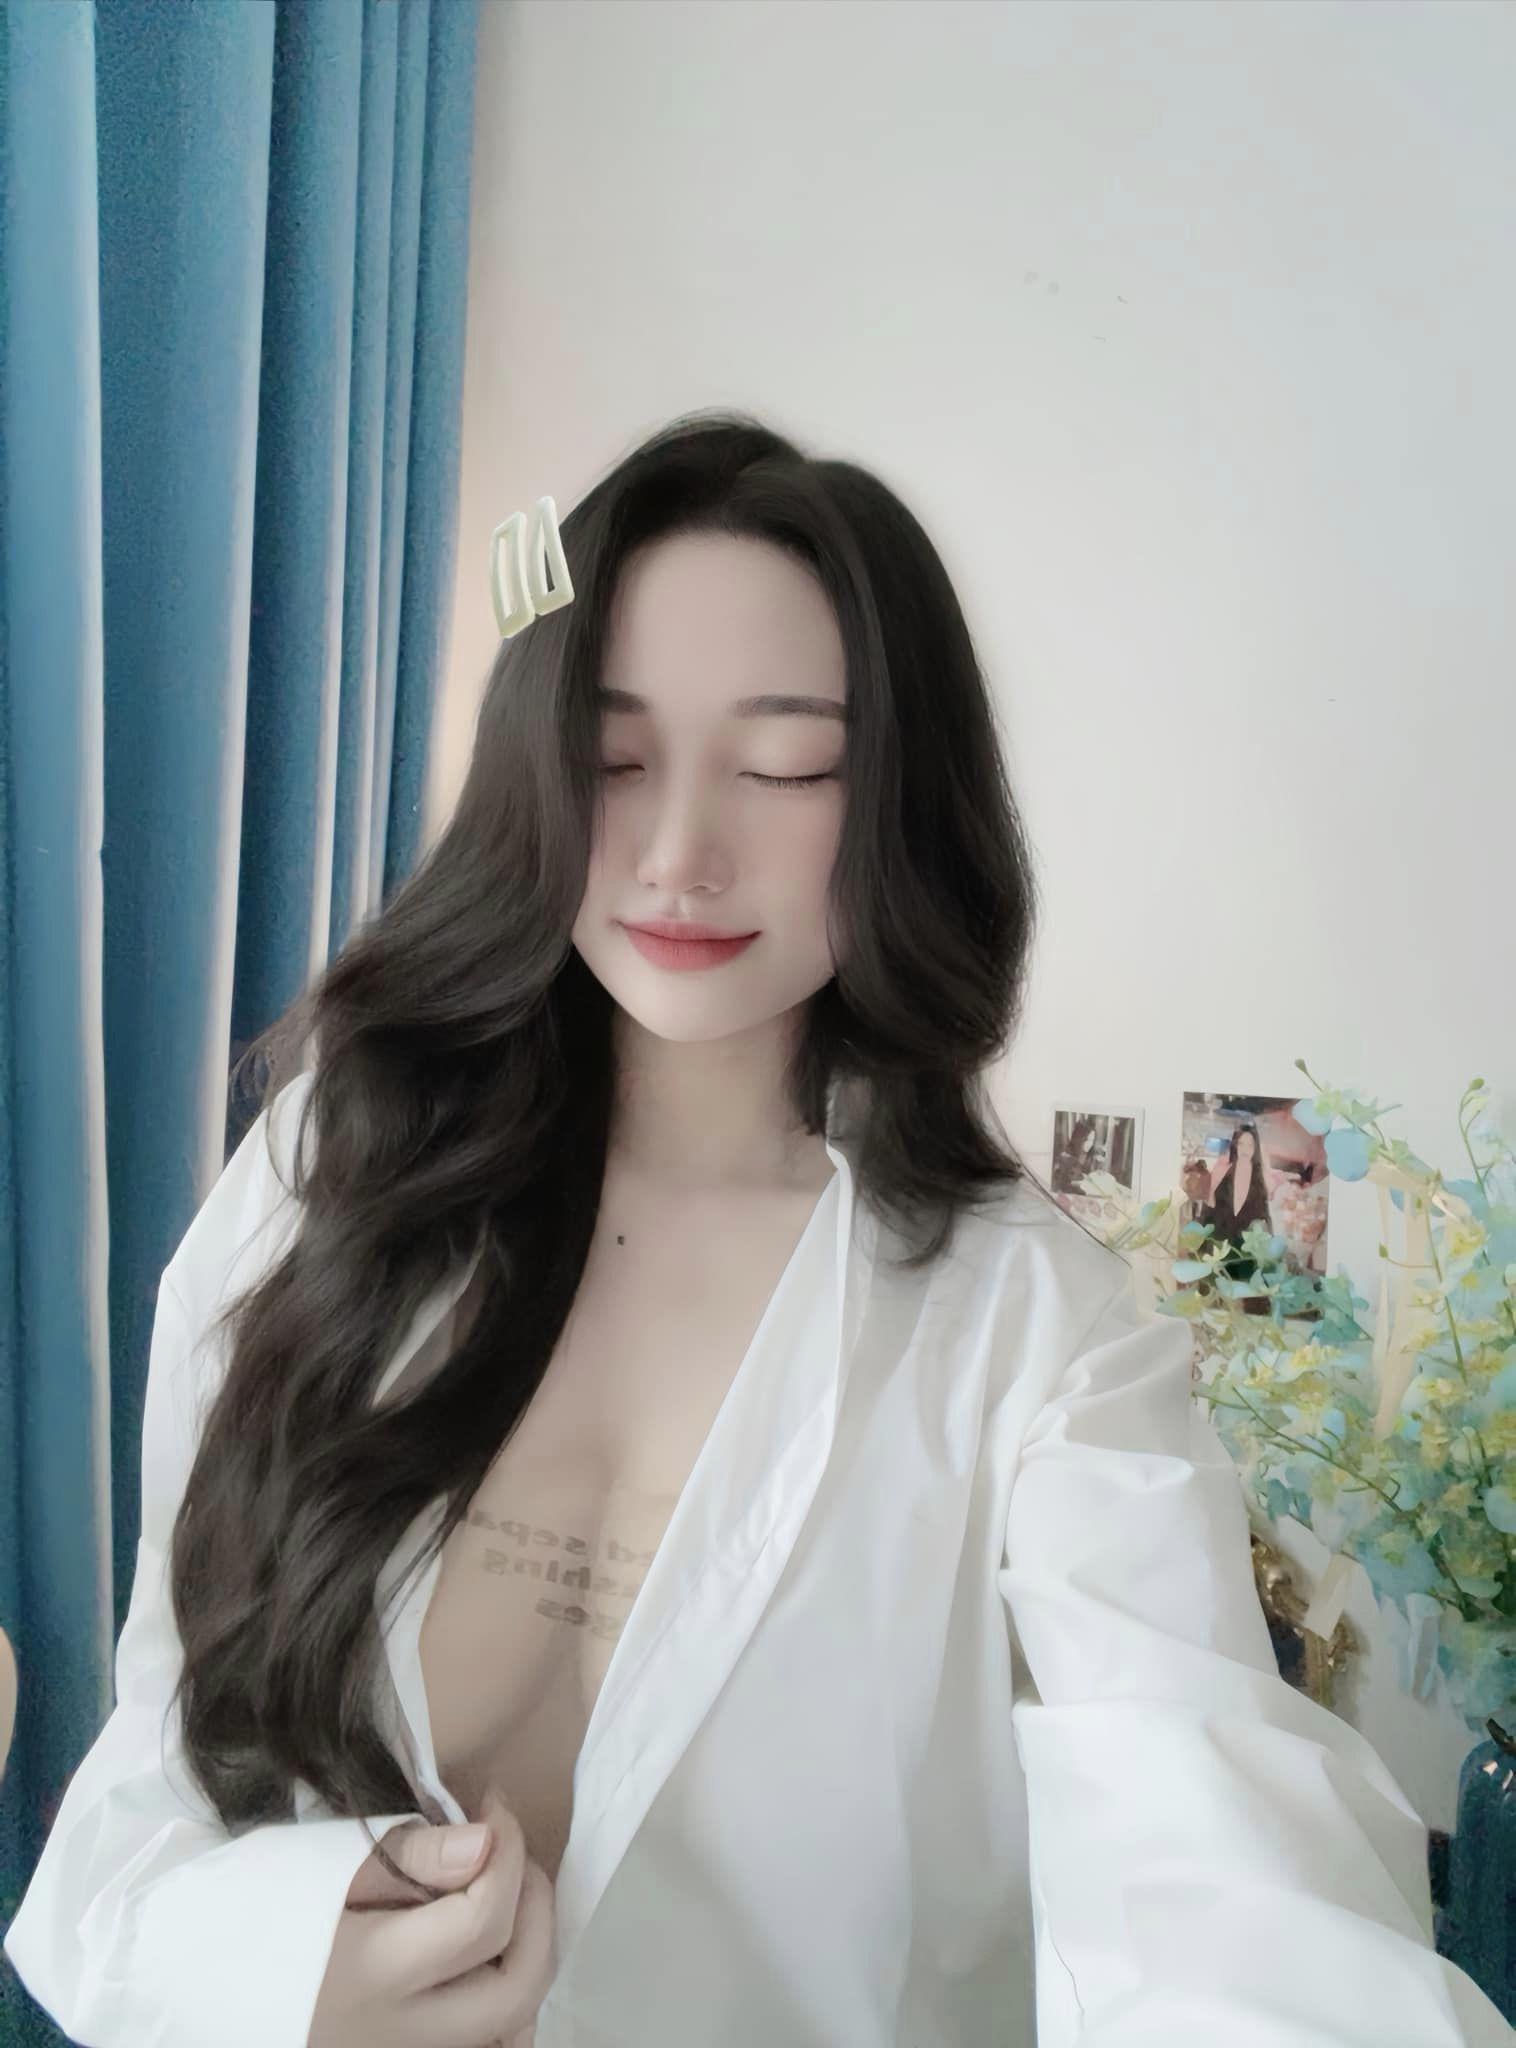 Hot girl Quảng Ninh chỉ cách tôn vòng 1 đẹp không phô với sơ mi - 2